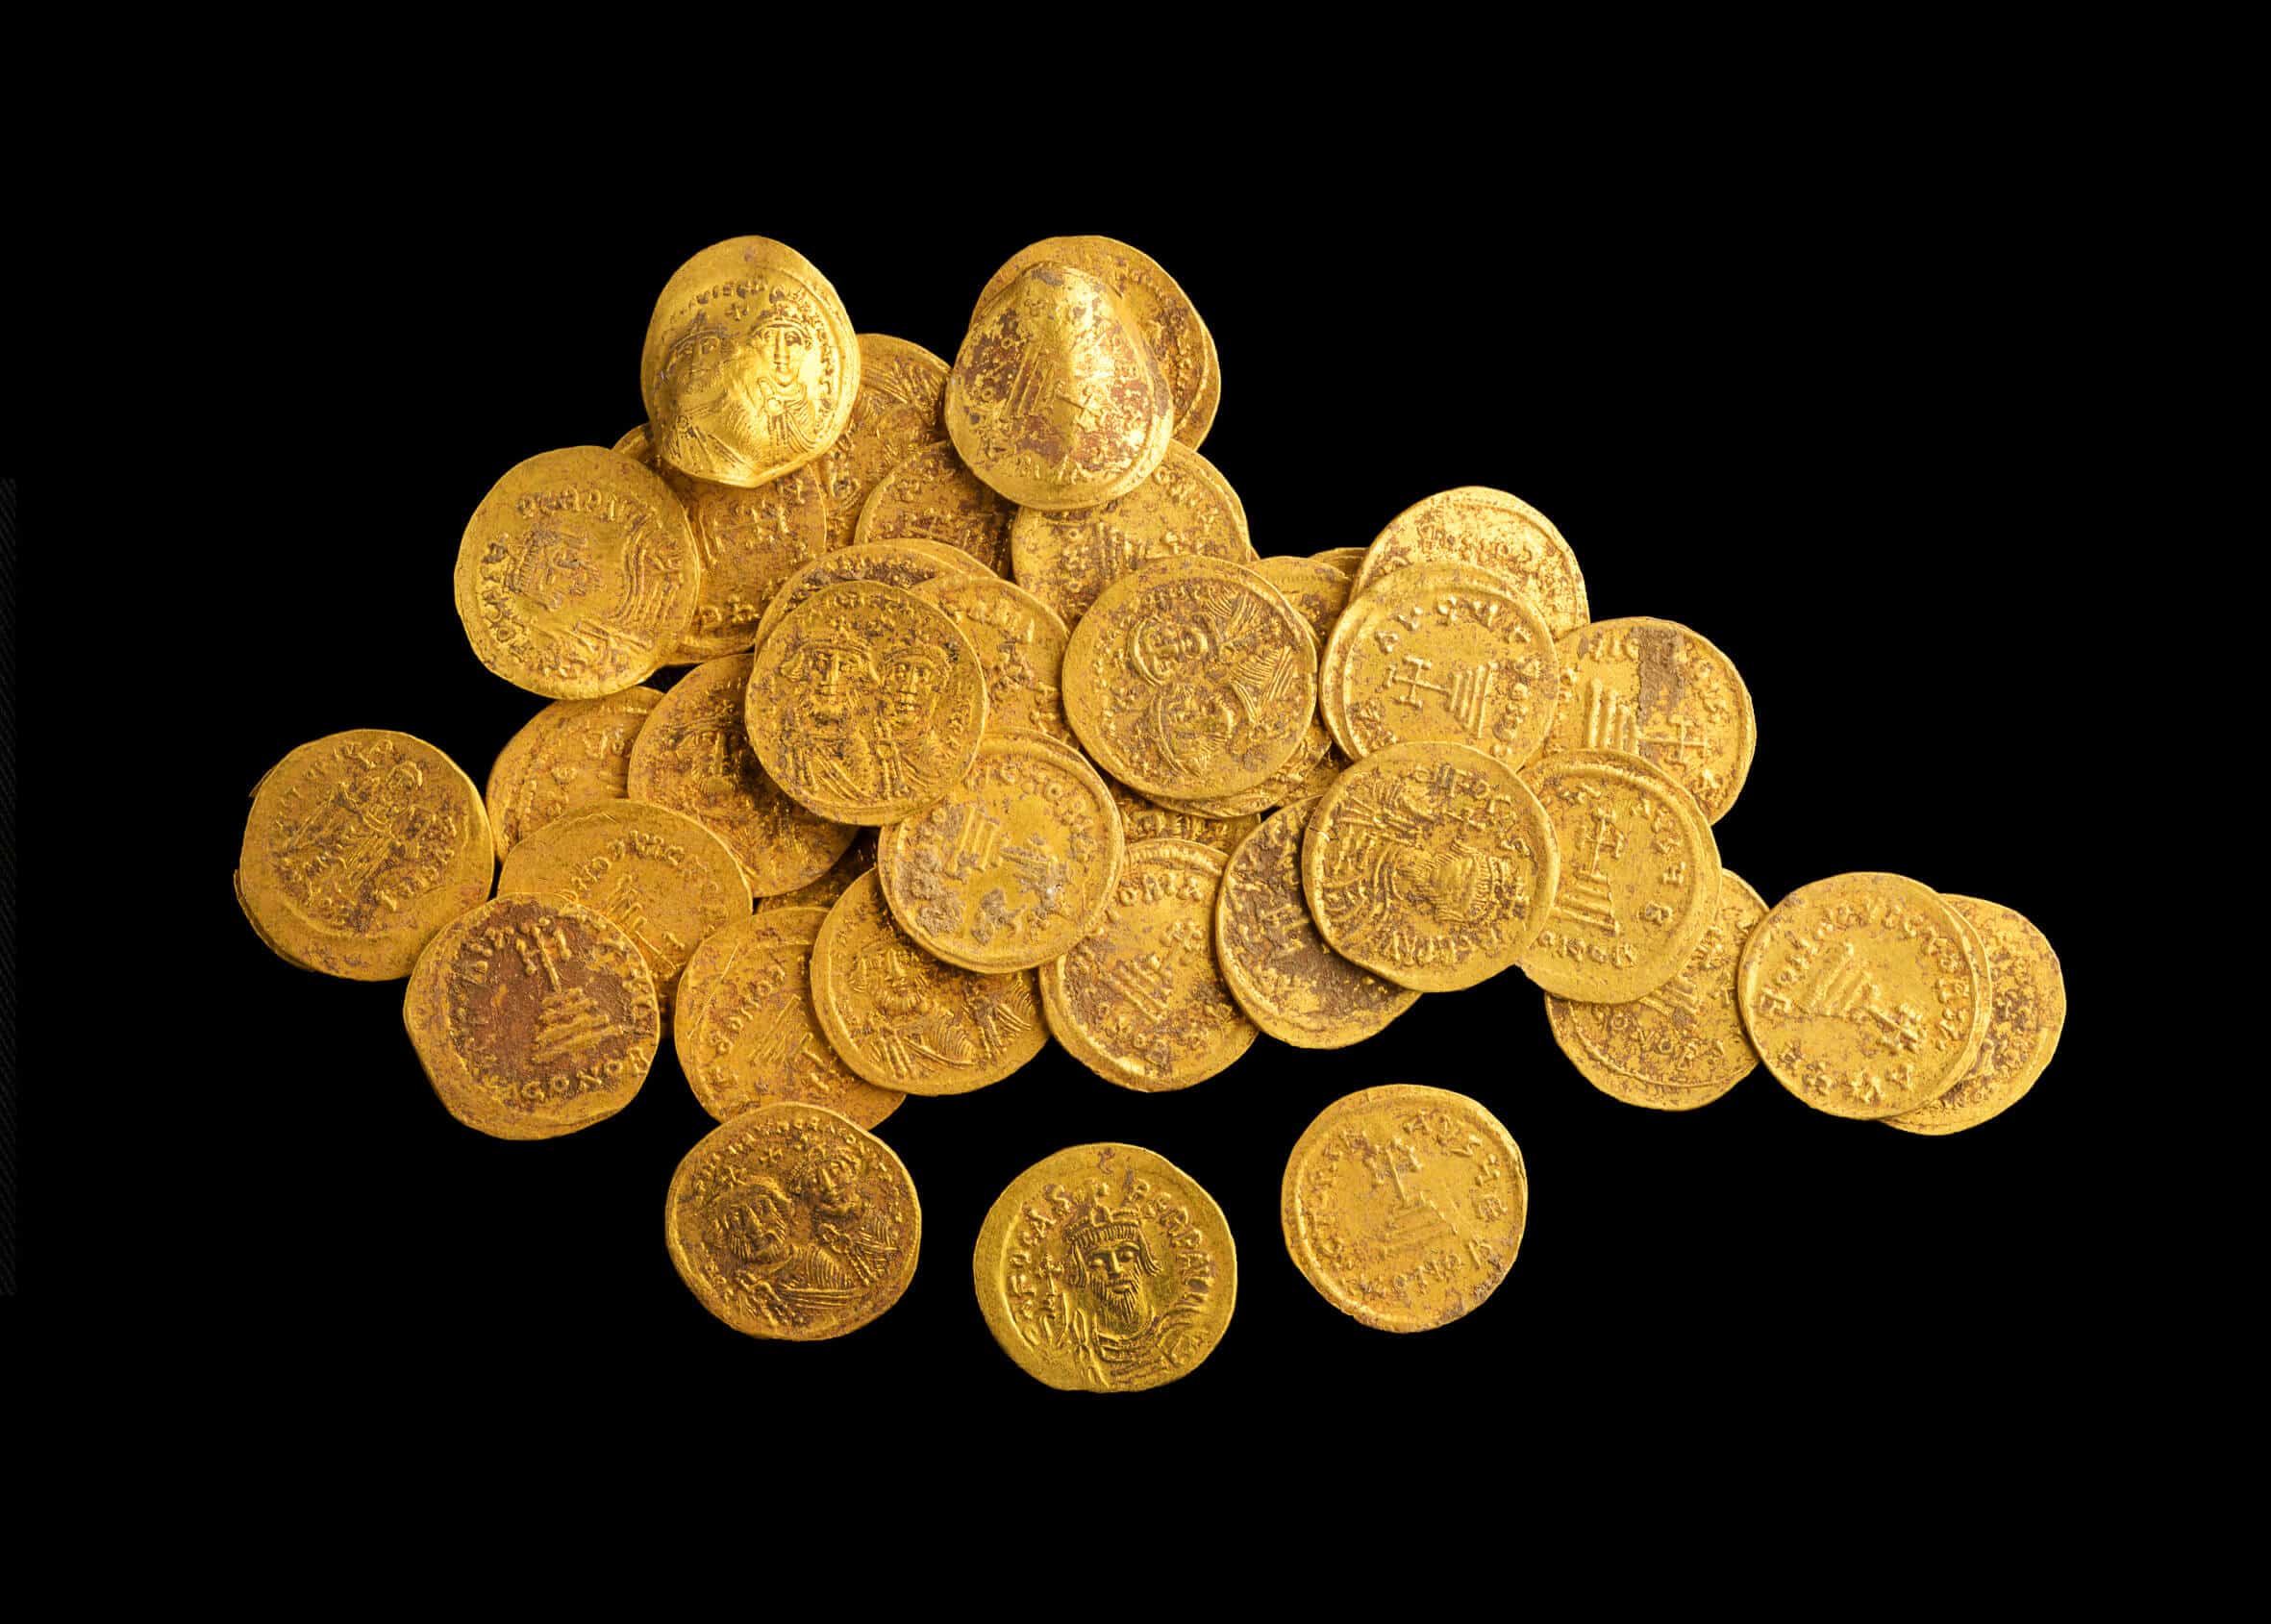 מטמון הזהב שהתגלה בבניאס. צילום: דפנה גזית, רשות העתיקות